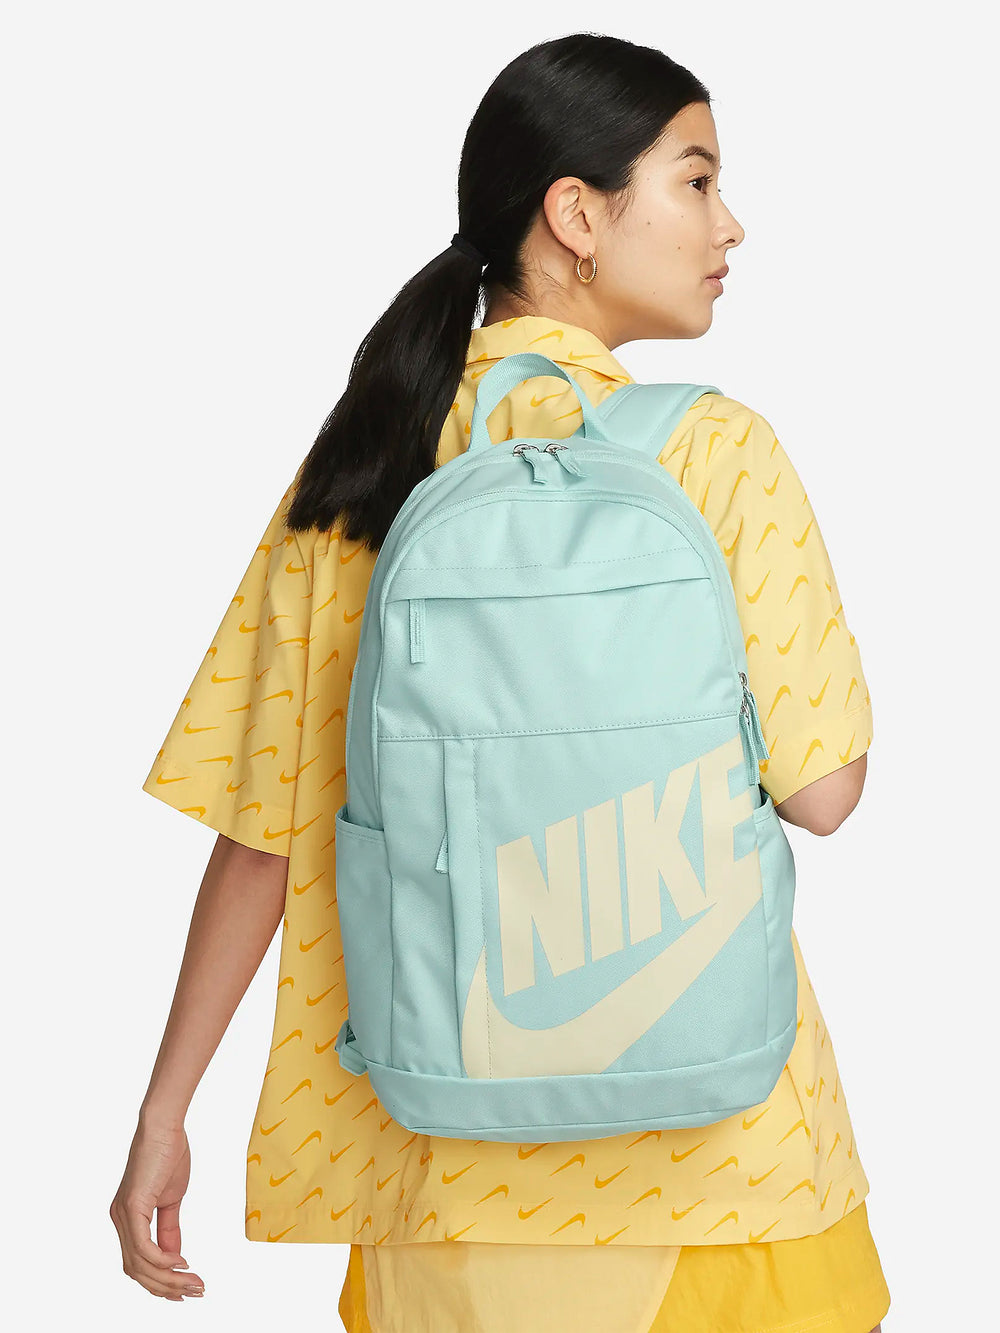 NIKE Nike Elemental Backpack Jade Ice Green 1SZ